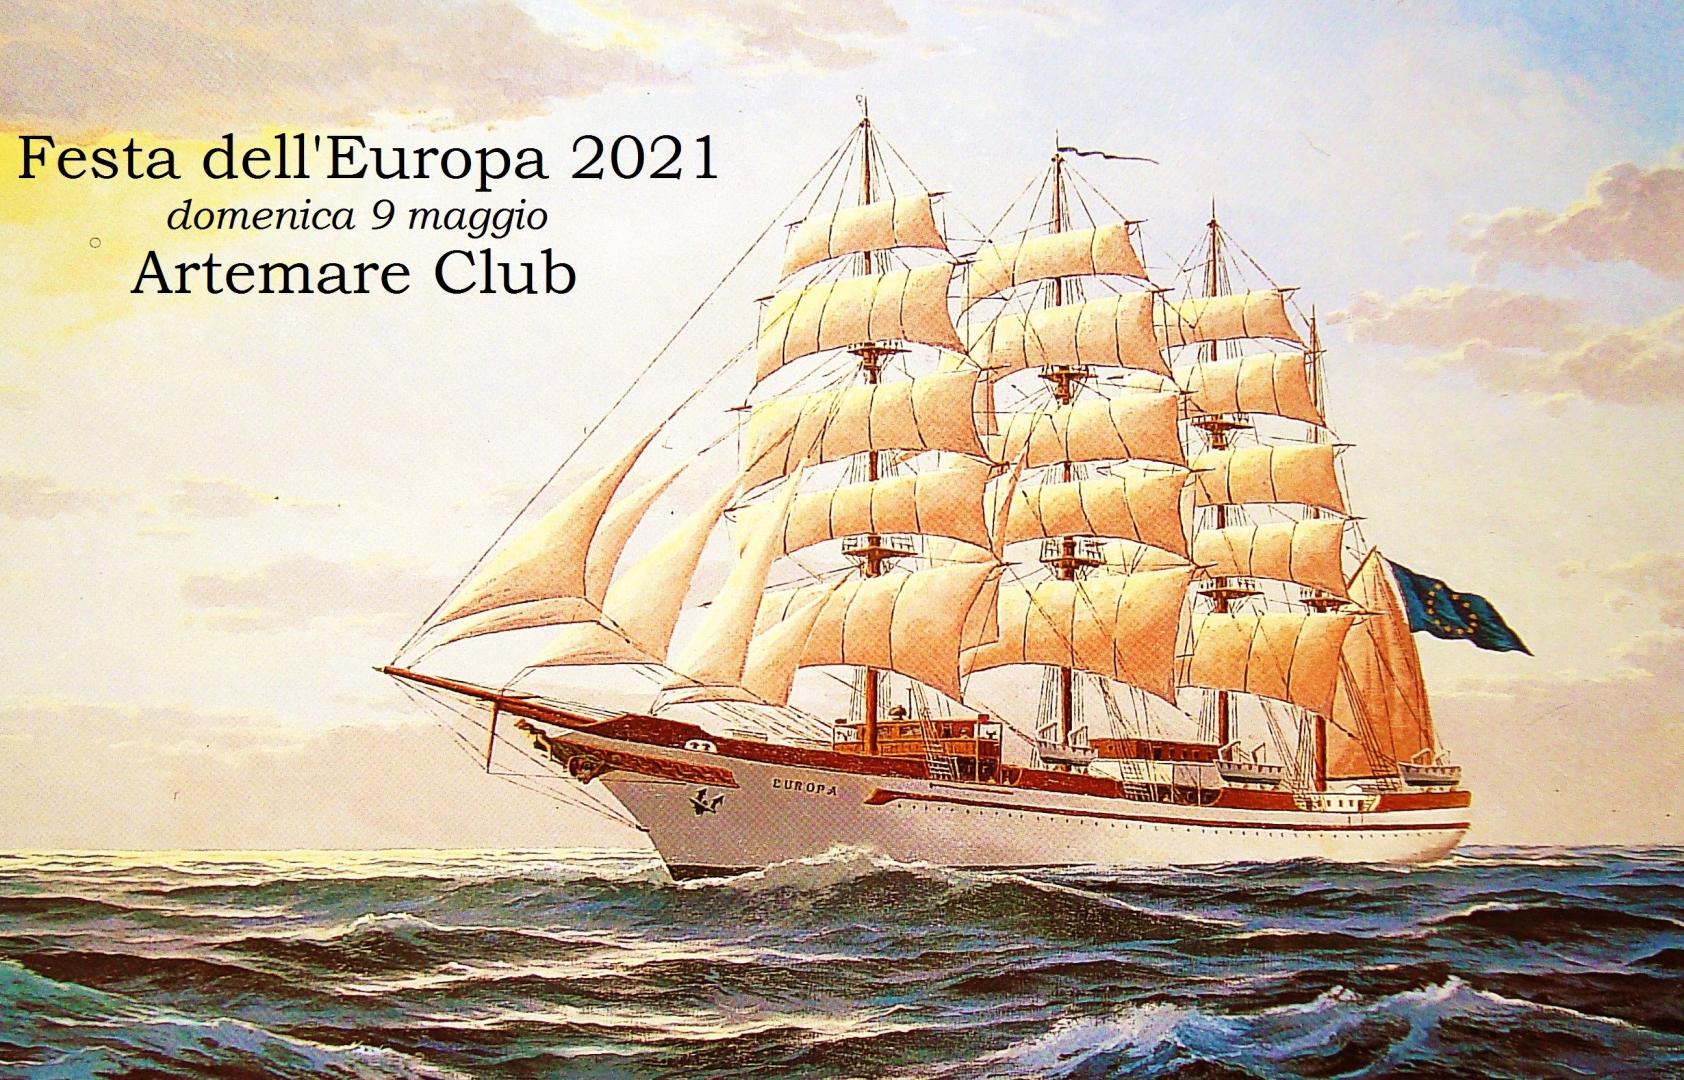 Artemare Club: 9 maggio 2021 e la “nave” Europa va